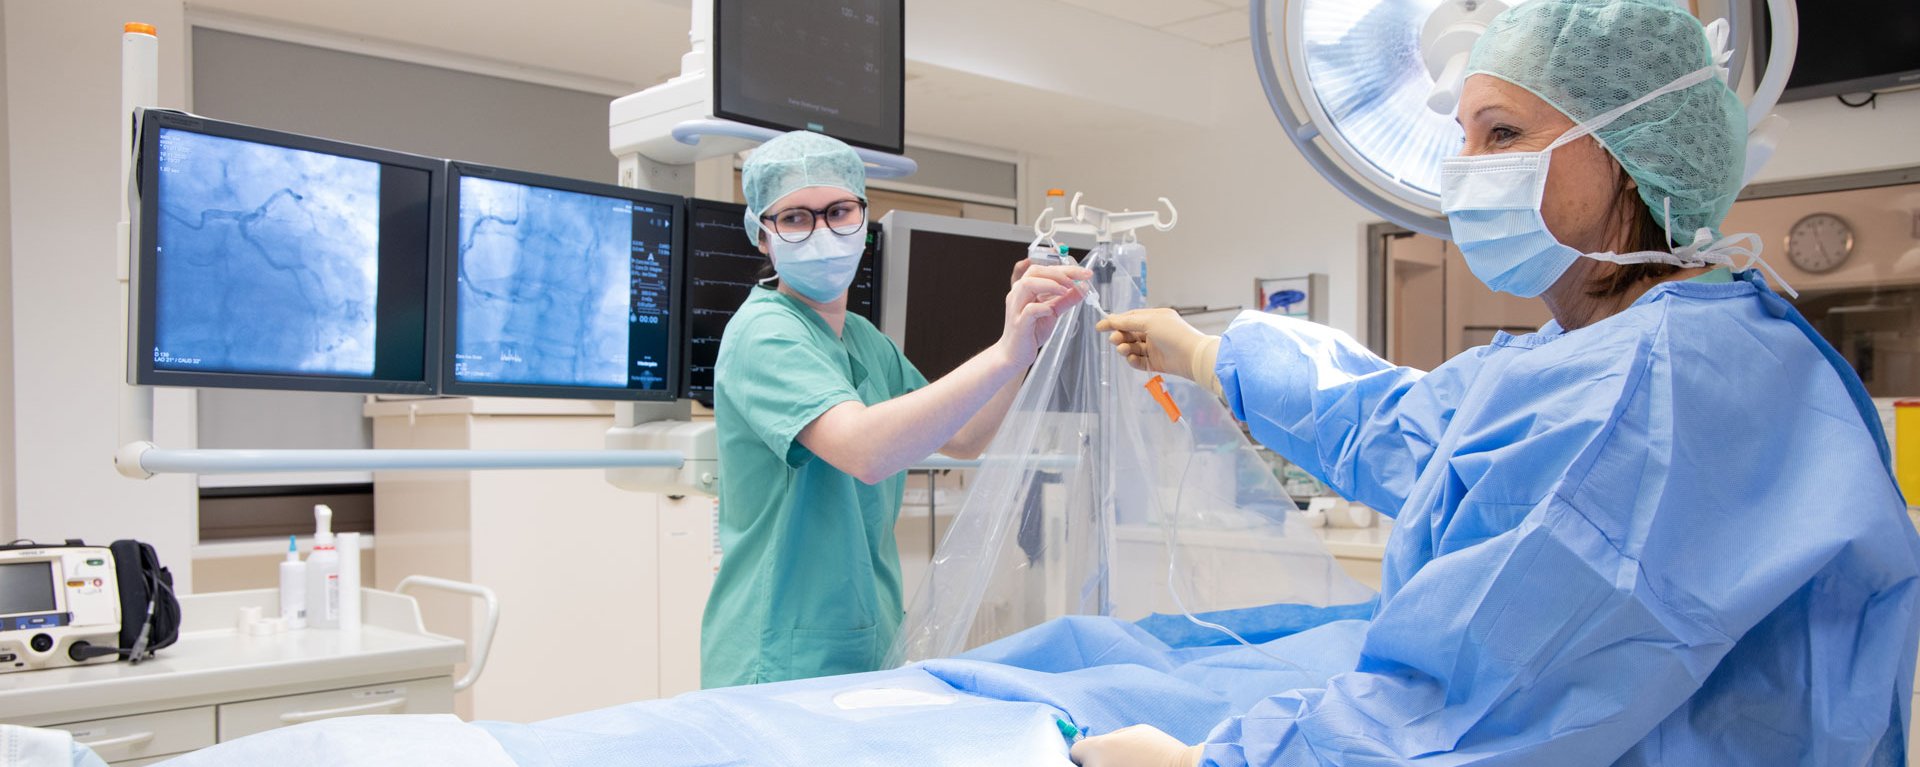 Im Operationssaal des Herz- & Gefäßzentrums Kempten-Oberallgäu stellen zwei Teammitglieder in OP-Kleidung die Versorgung des Patienten sicher